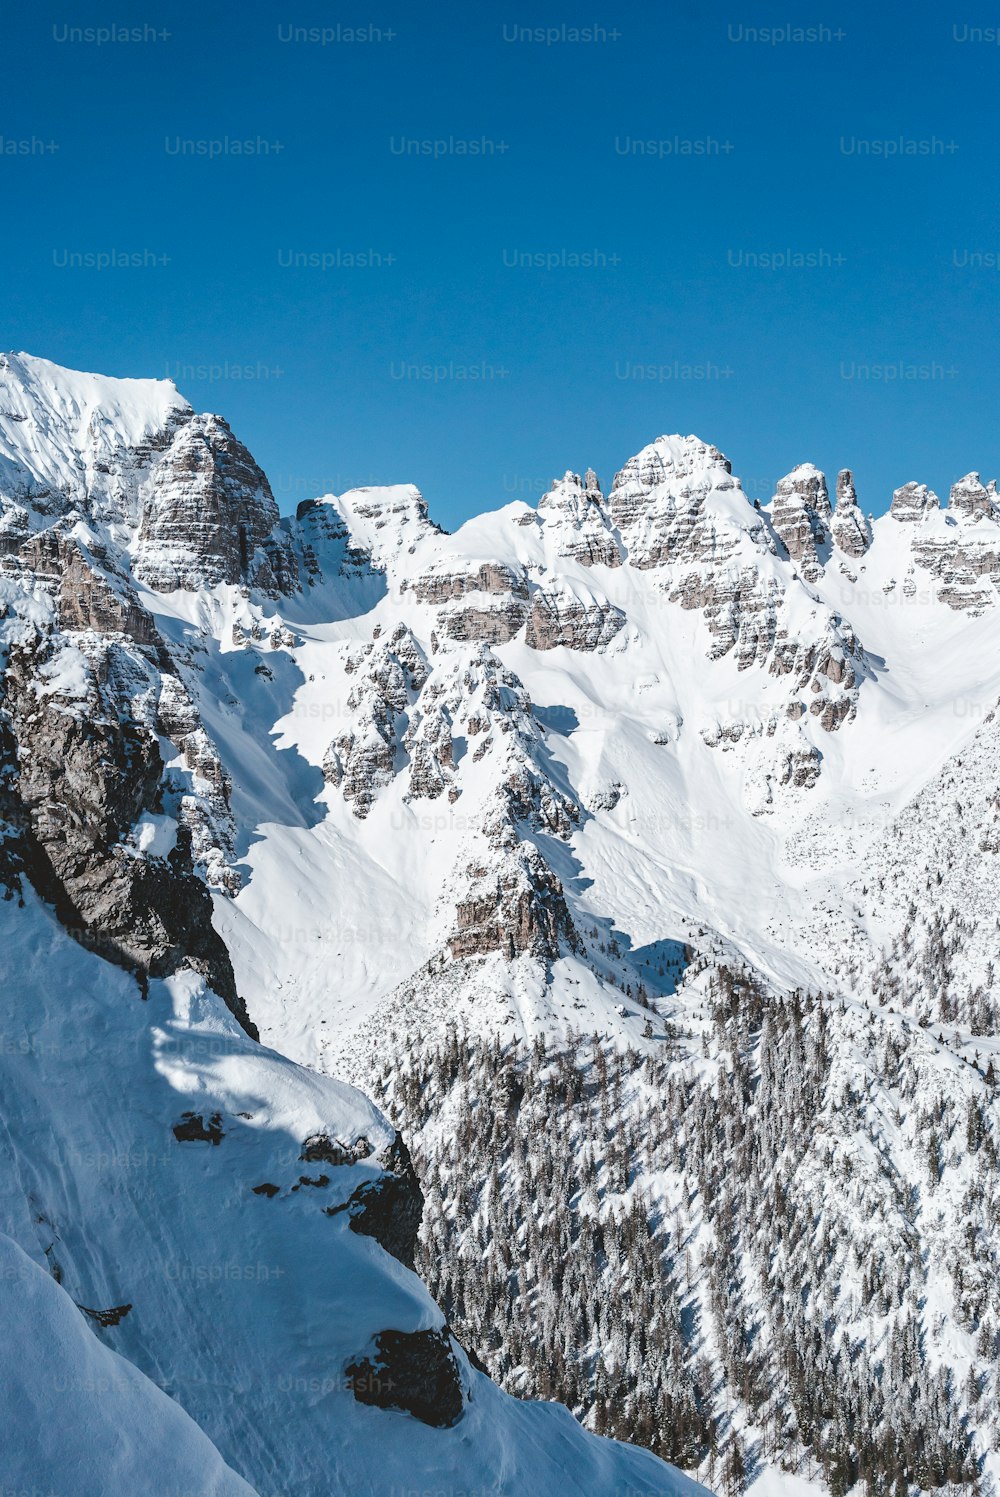 Ein Mann fährt auf Skiern die Seite eines schneebedeckten Berges hinunter